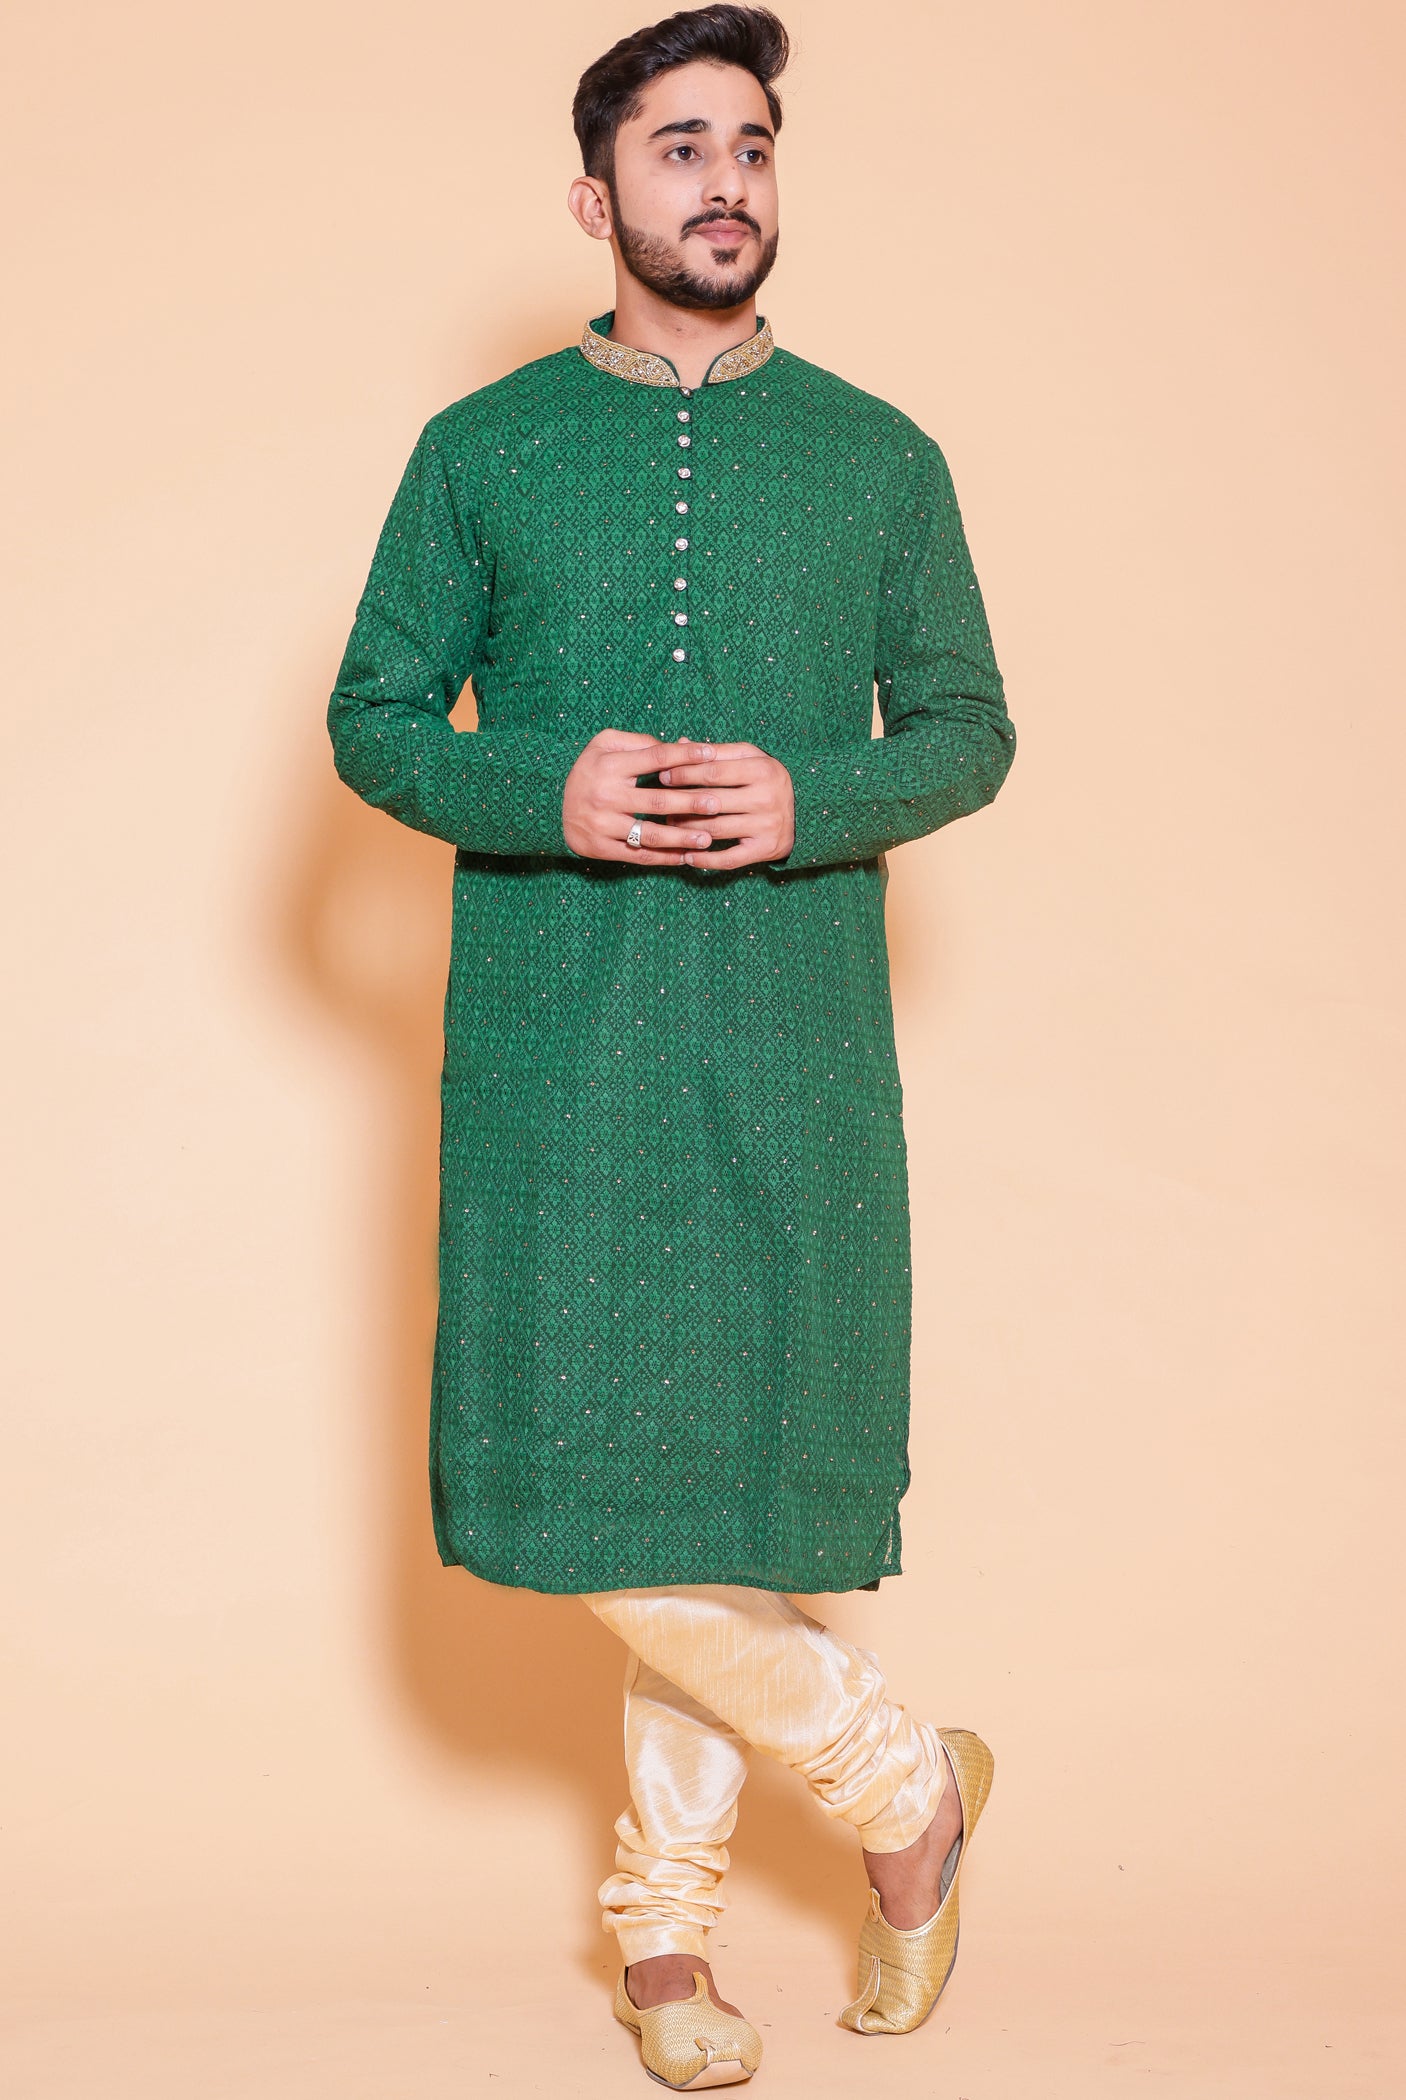 Luckhnowi kurta suit with resham/thread work all over- Bottle Green